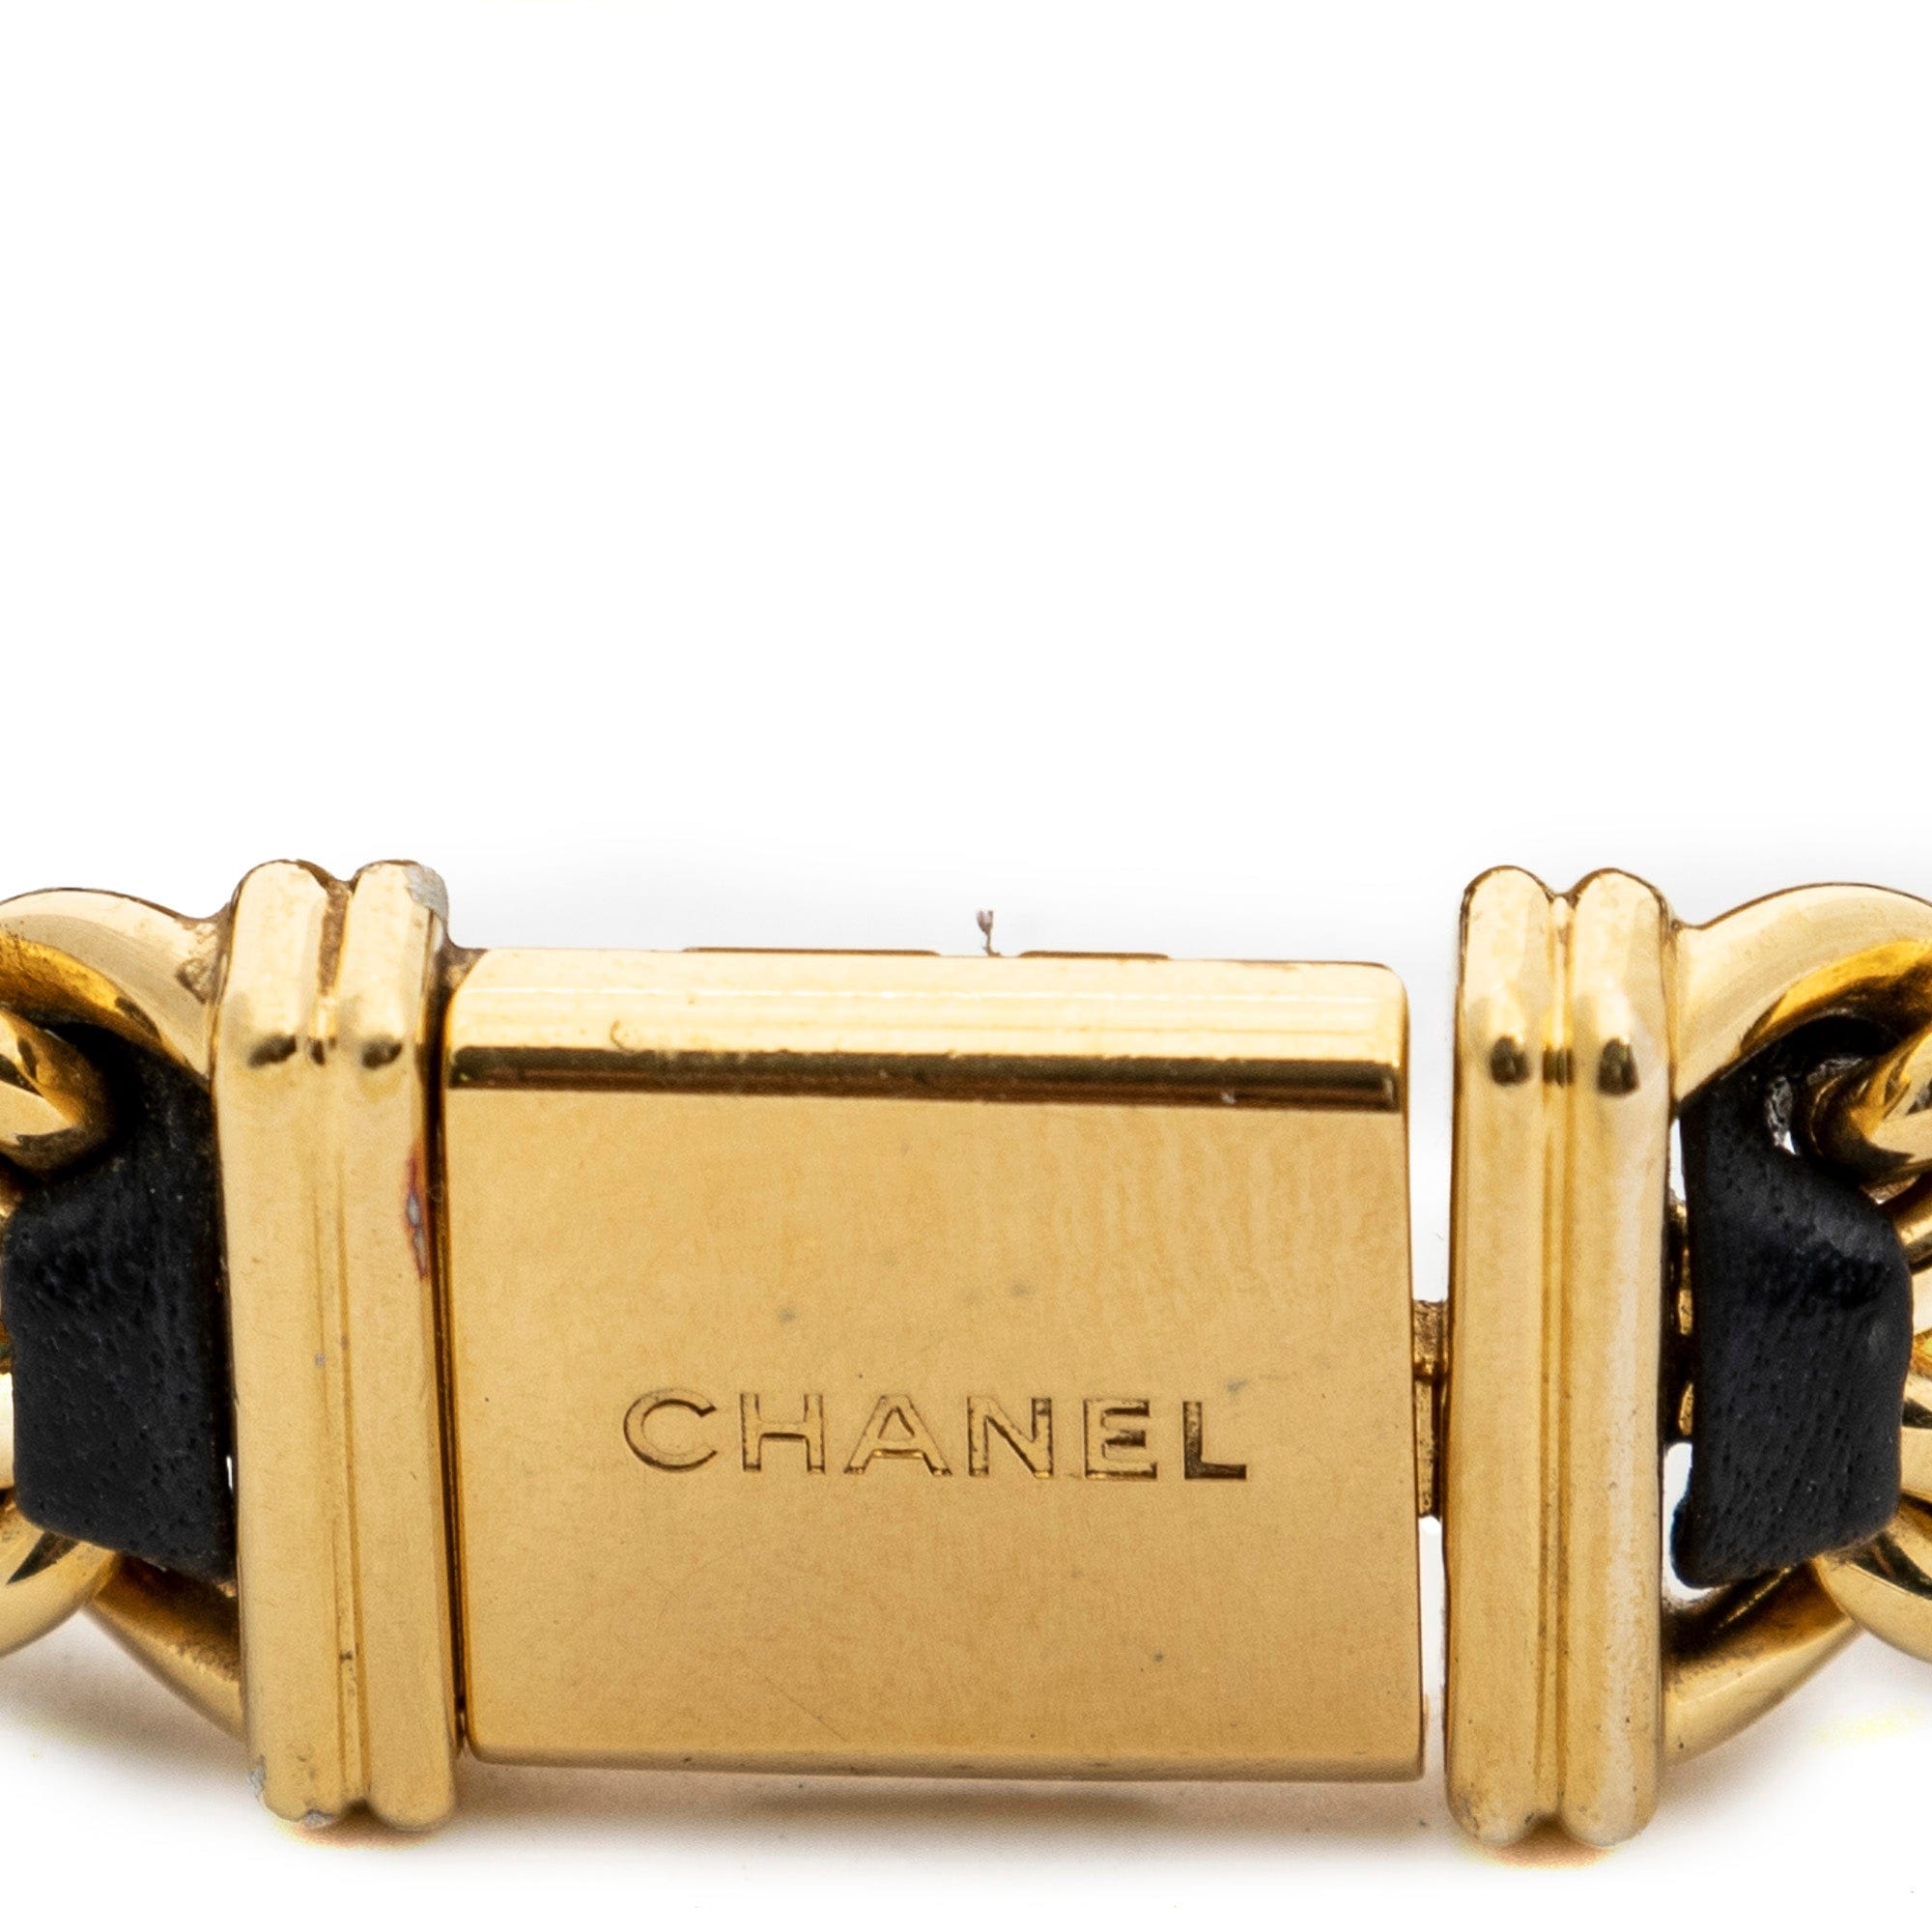 Chanel Chanel Vintage Première Watch size M - AWC1595